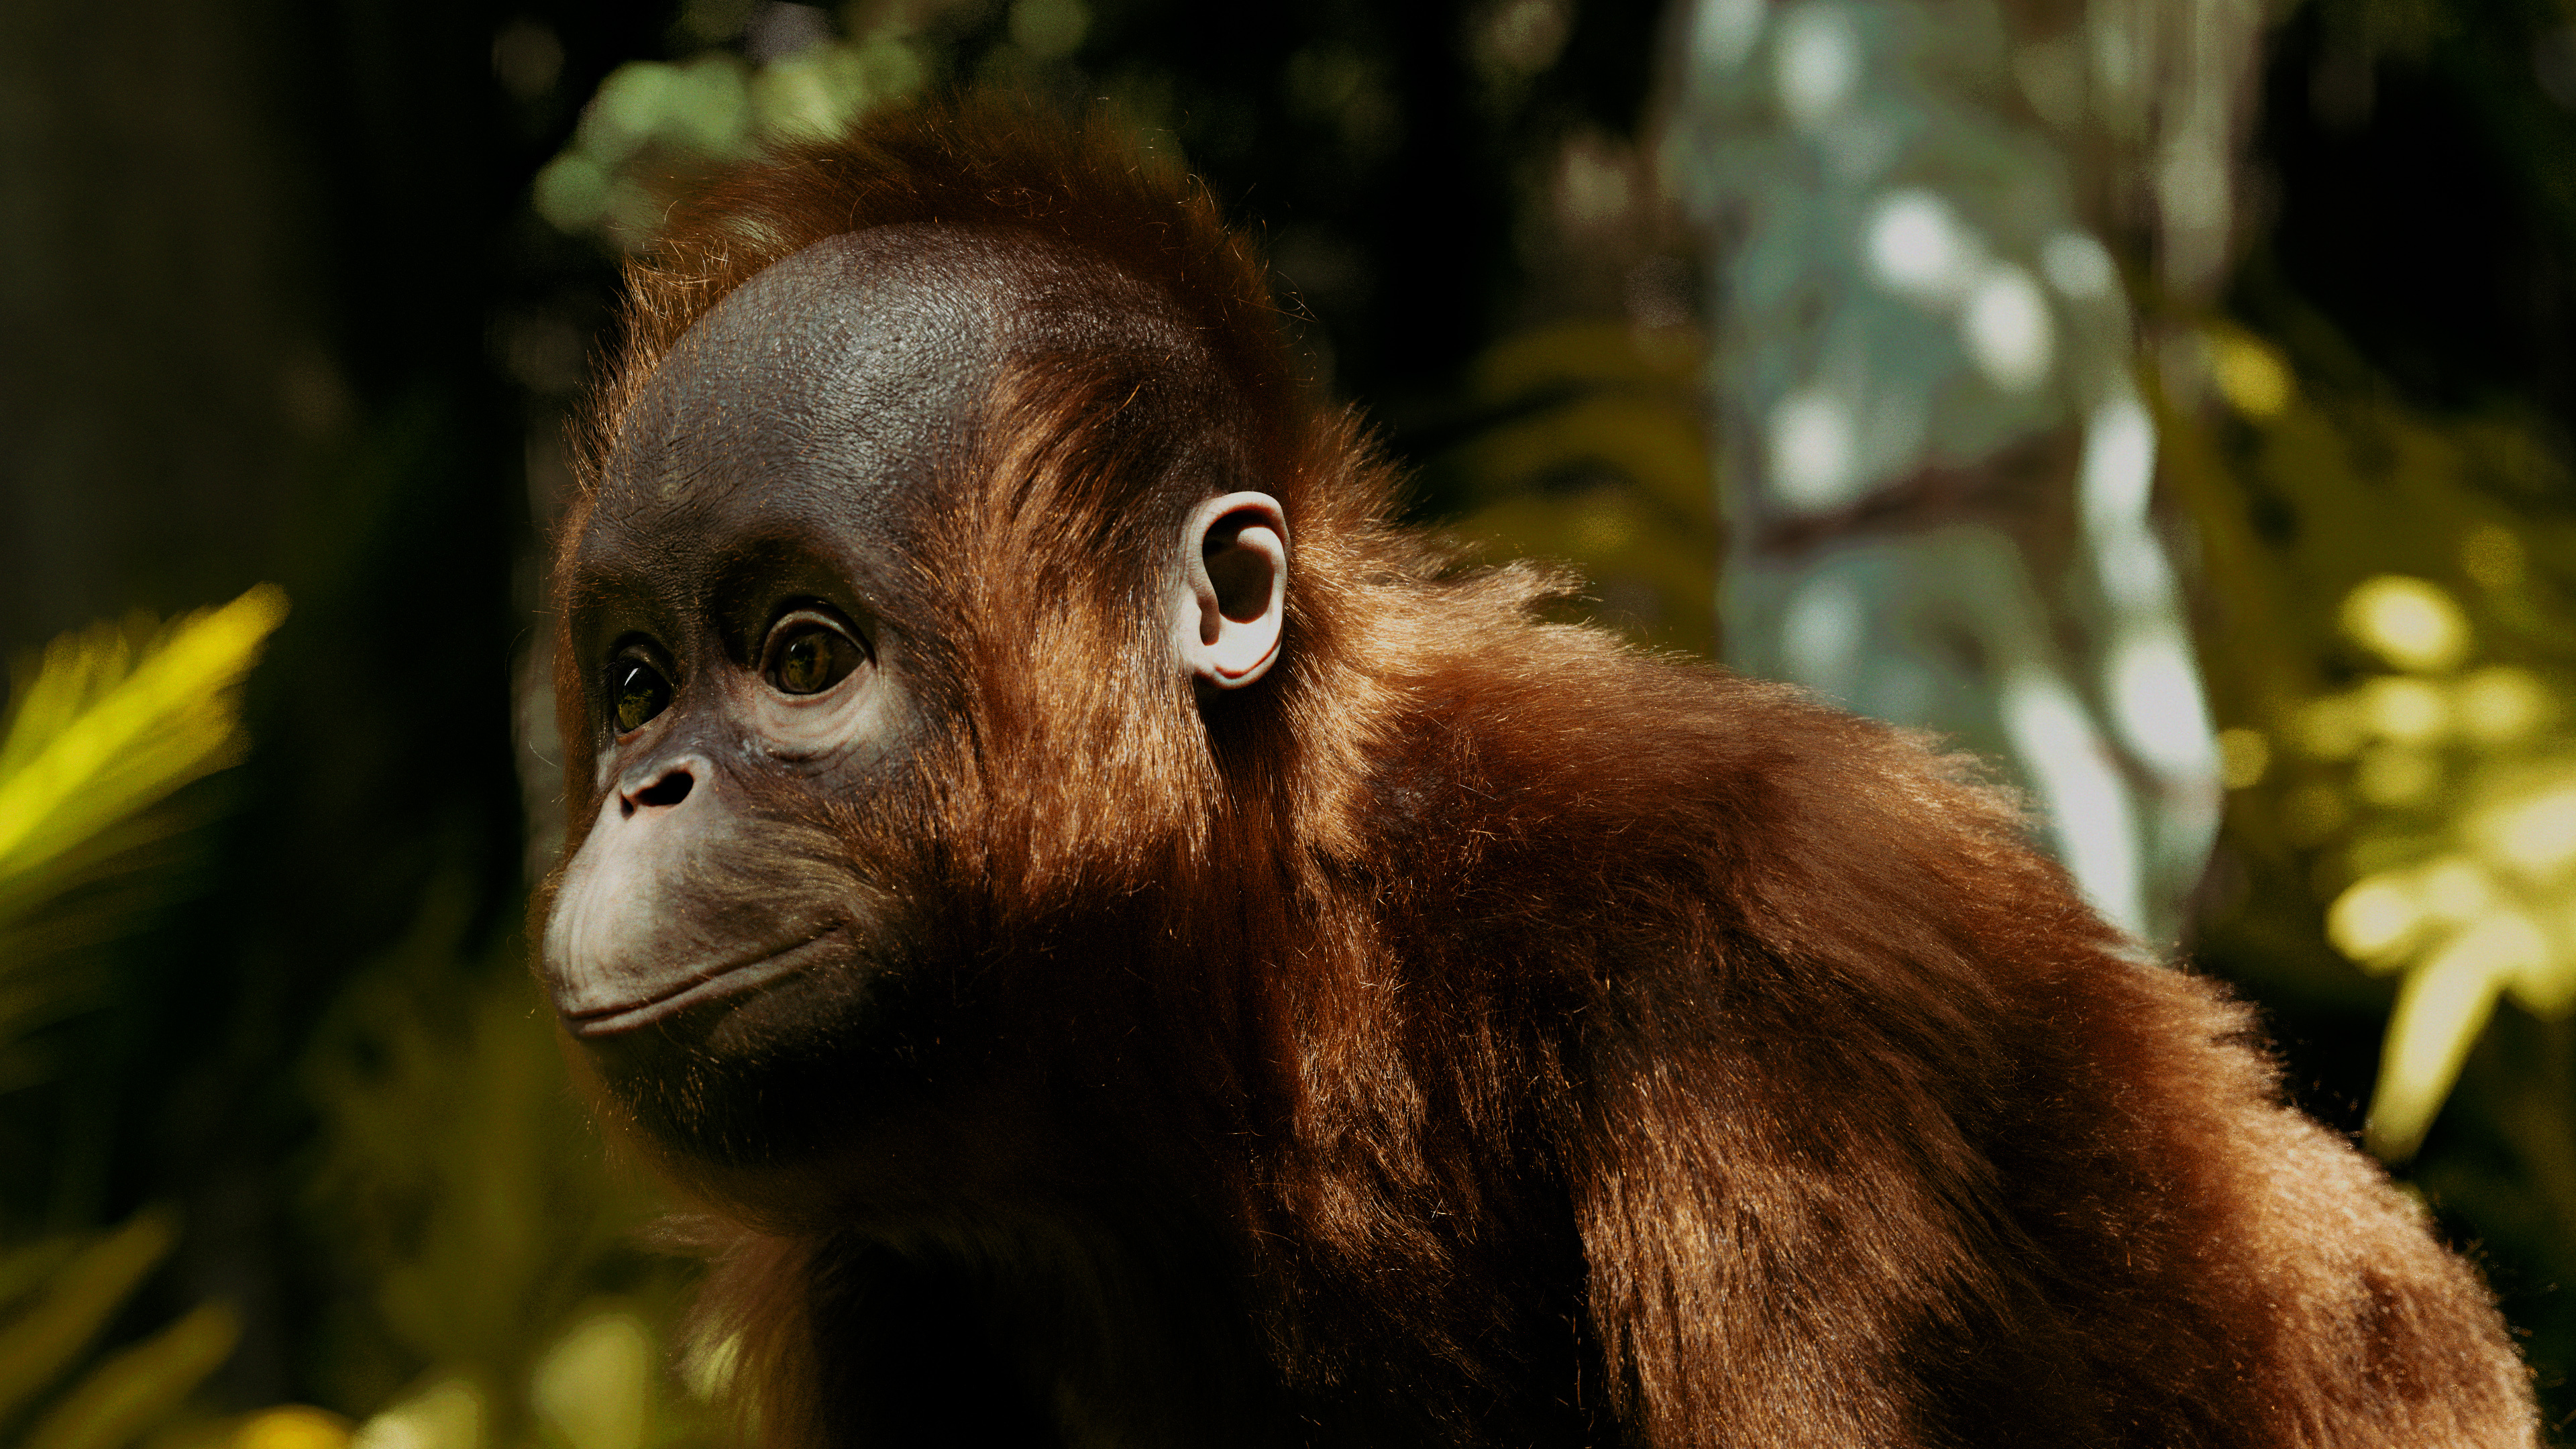 Orangutan, ZBrush creation, Boro the orangutan, Digital art, 3840x2160 4K Desktop